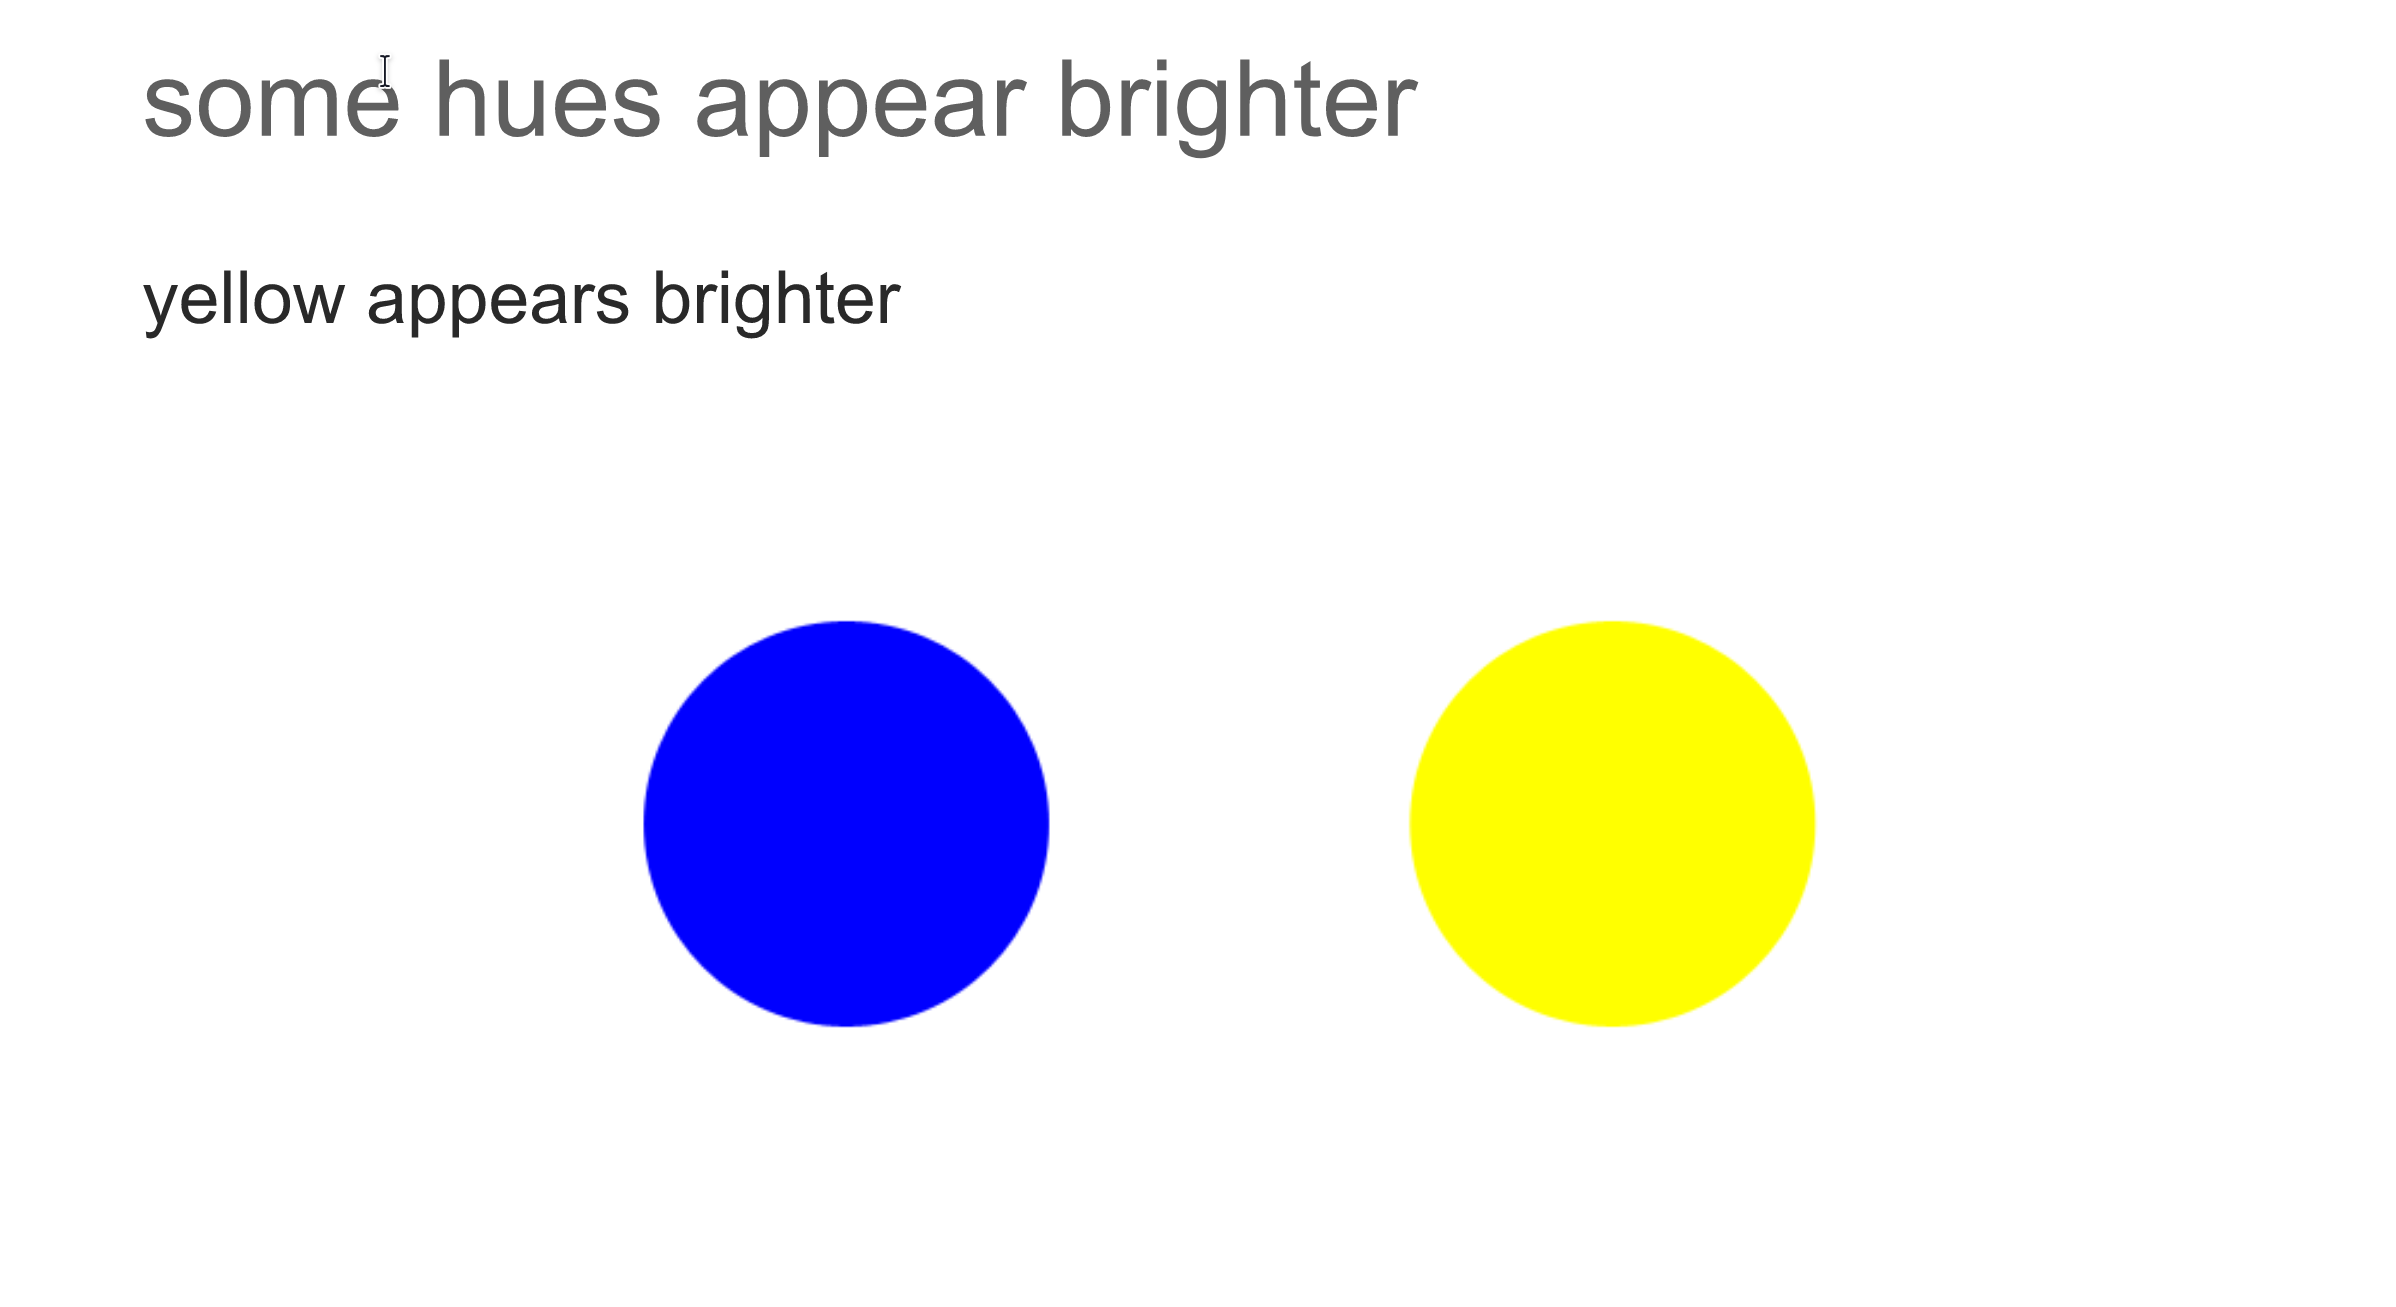 Azul y amarillo &mdash; un color predomina más. Fuente: Martin Krzywinski.